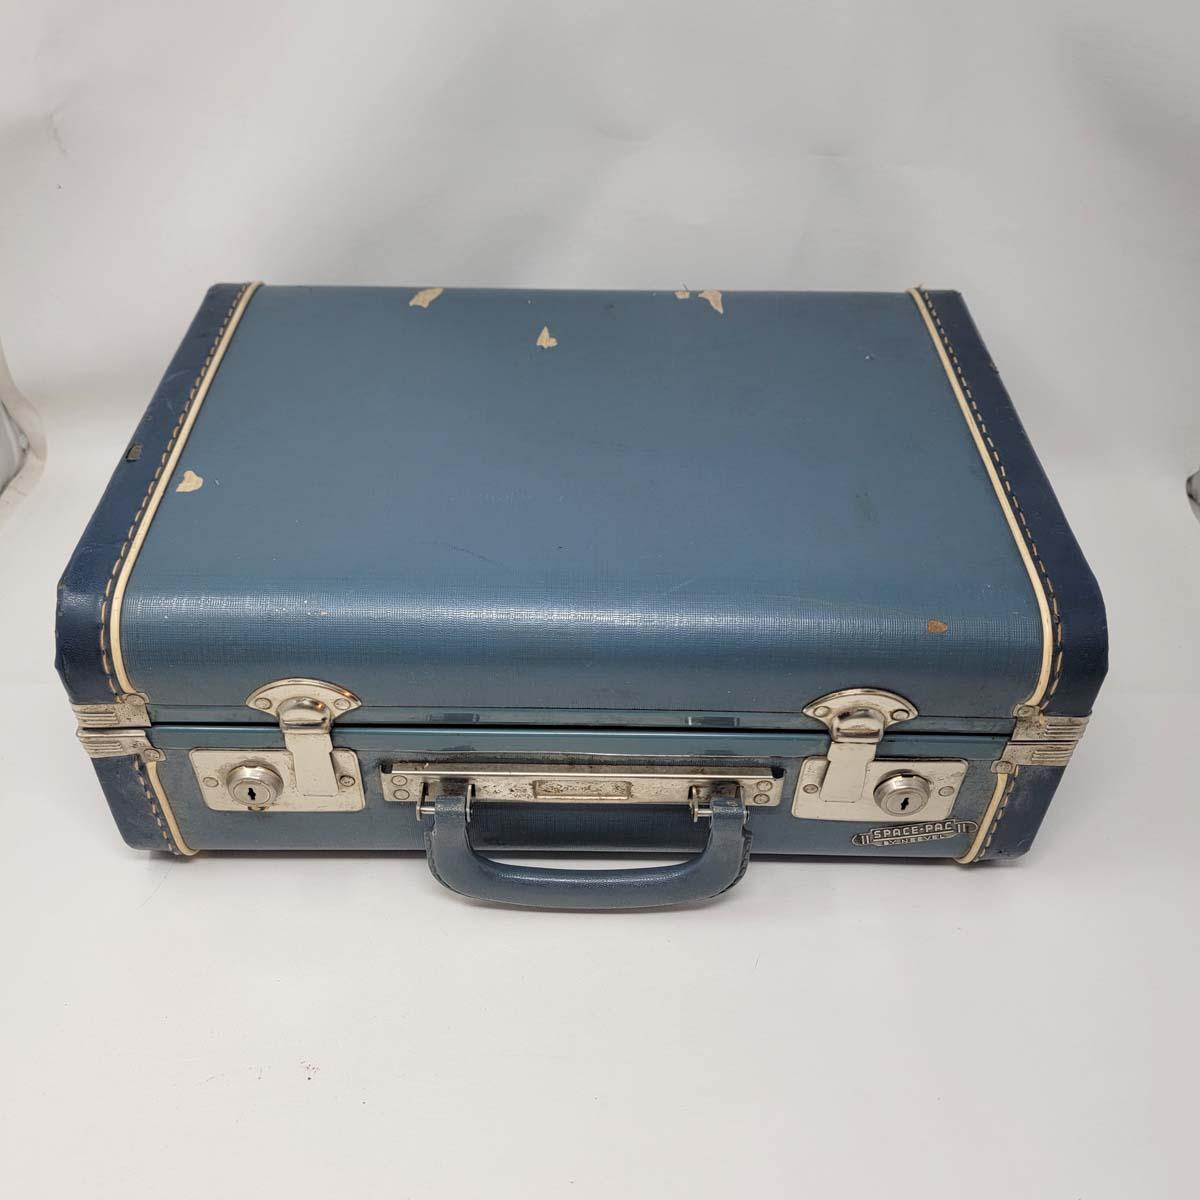 Vintage Blue Suitcase Vintage Monarch Suitcase Vintage 